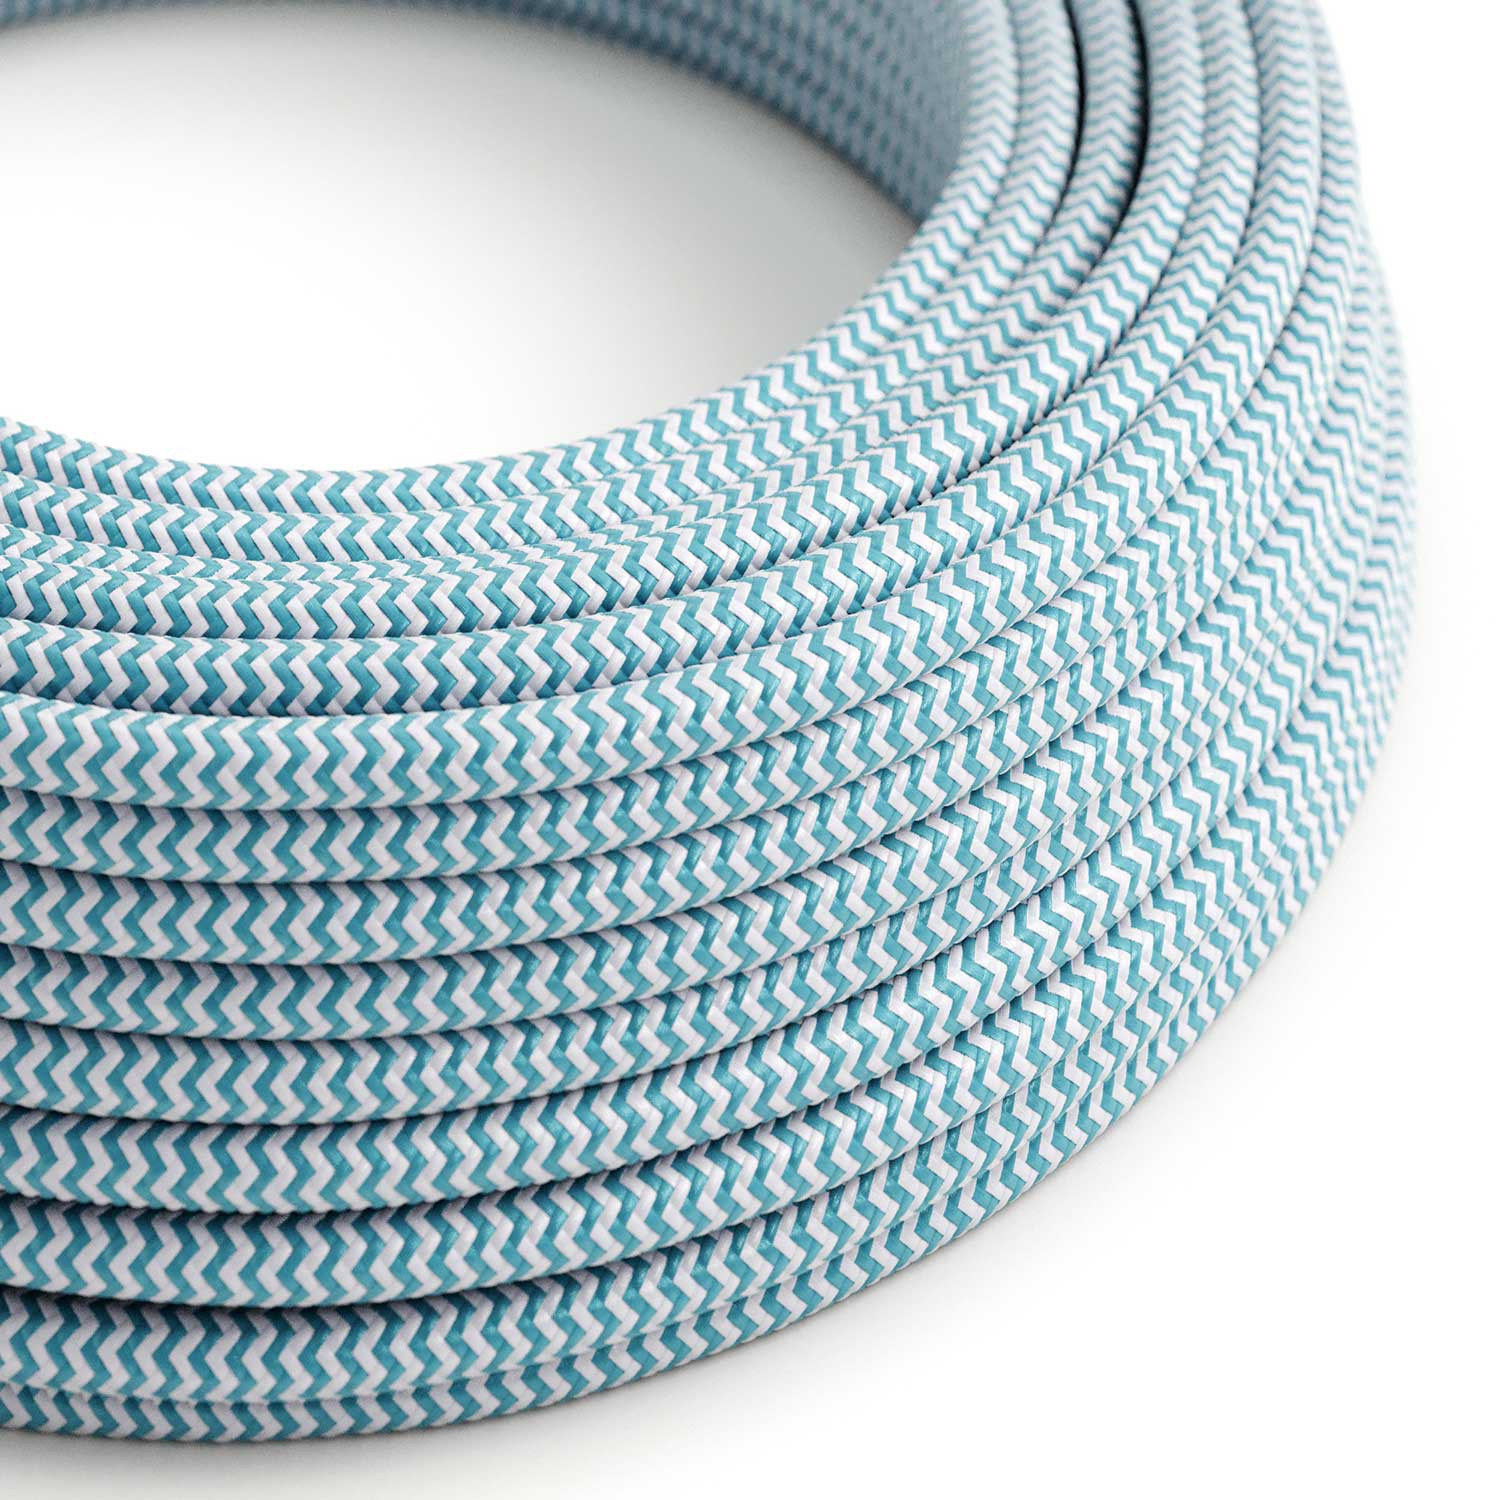 Cavo tessile Blu Ciano e Bianco Ottico ZigZag lucido - L'Originale Creative-Cables - RZ11 rotondo 2x0,75mm / 3x0,75mm